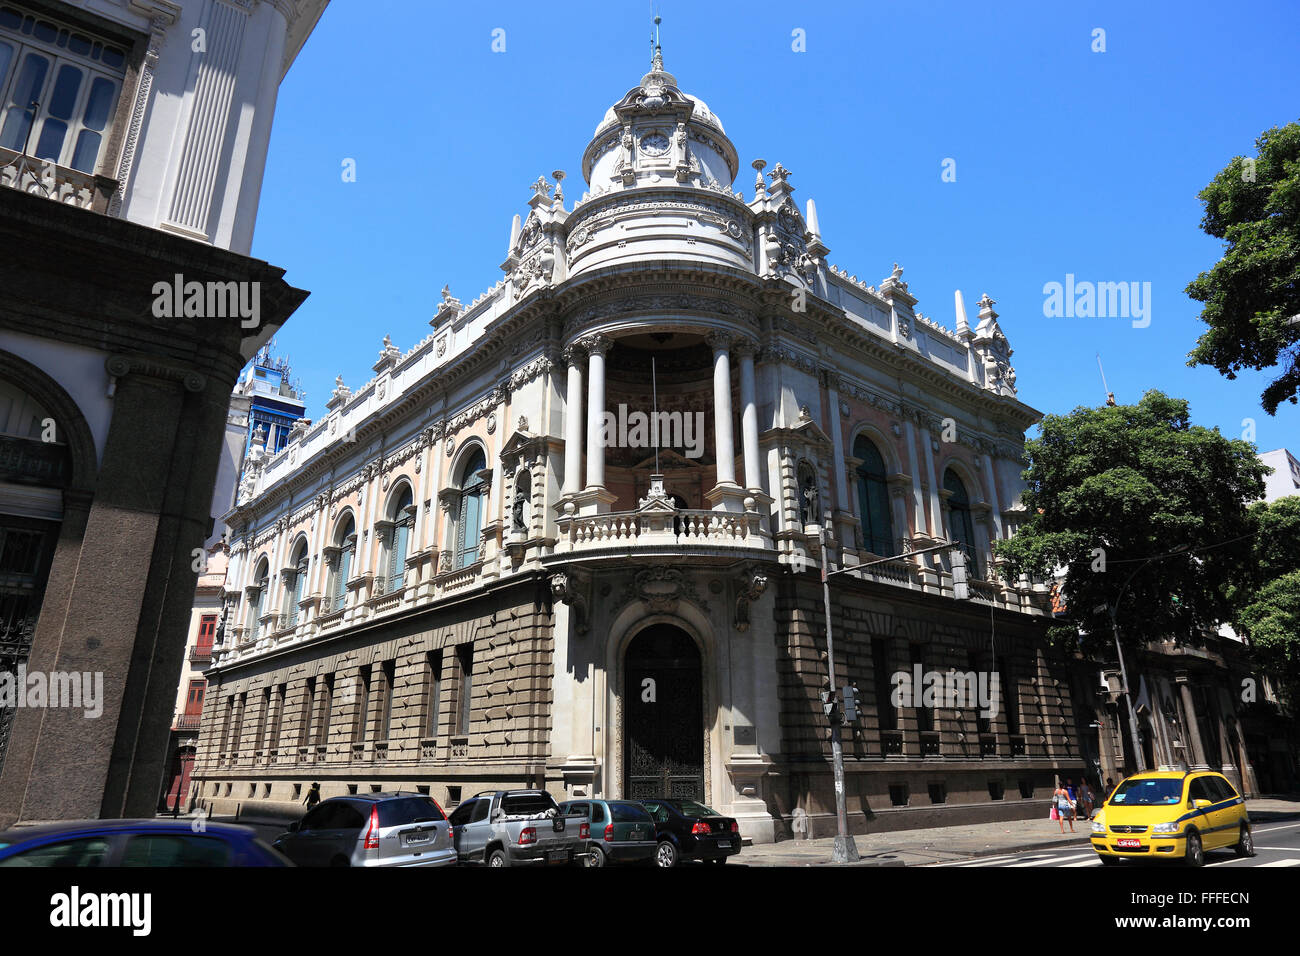 Centro Cultural Banco do Brazil, Rio de Janeiro, Brazil Stock Photo